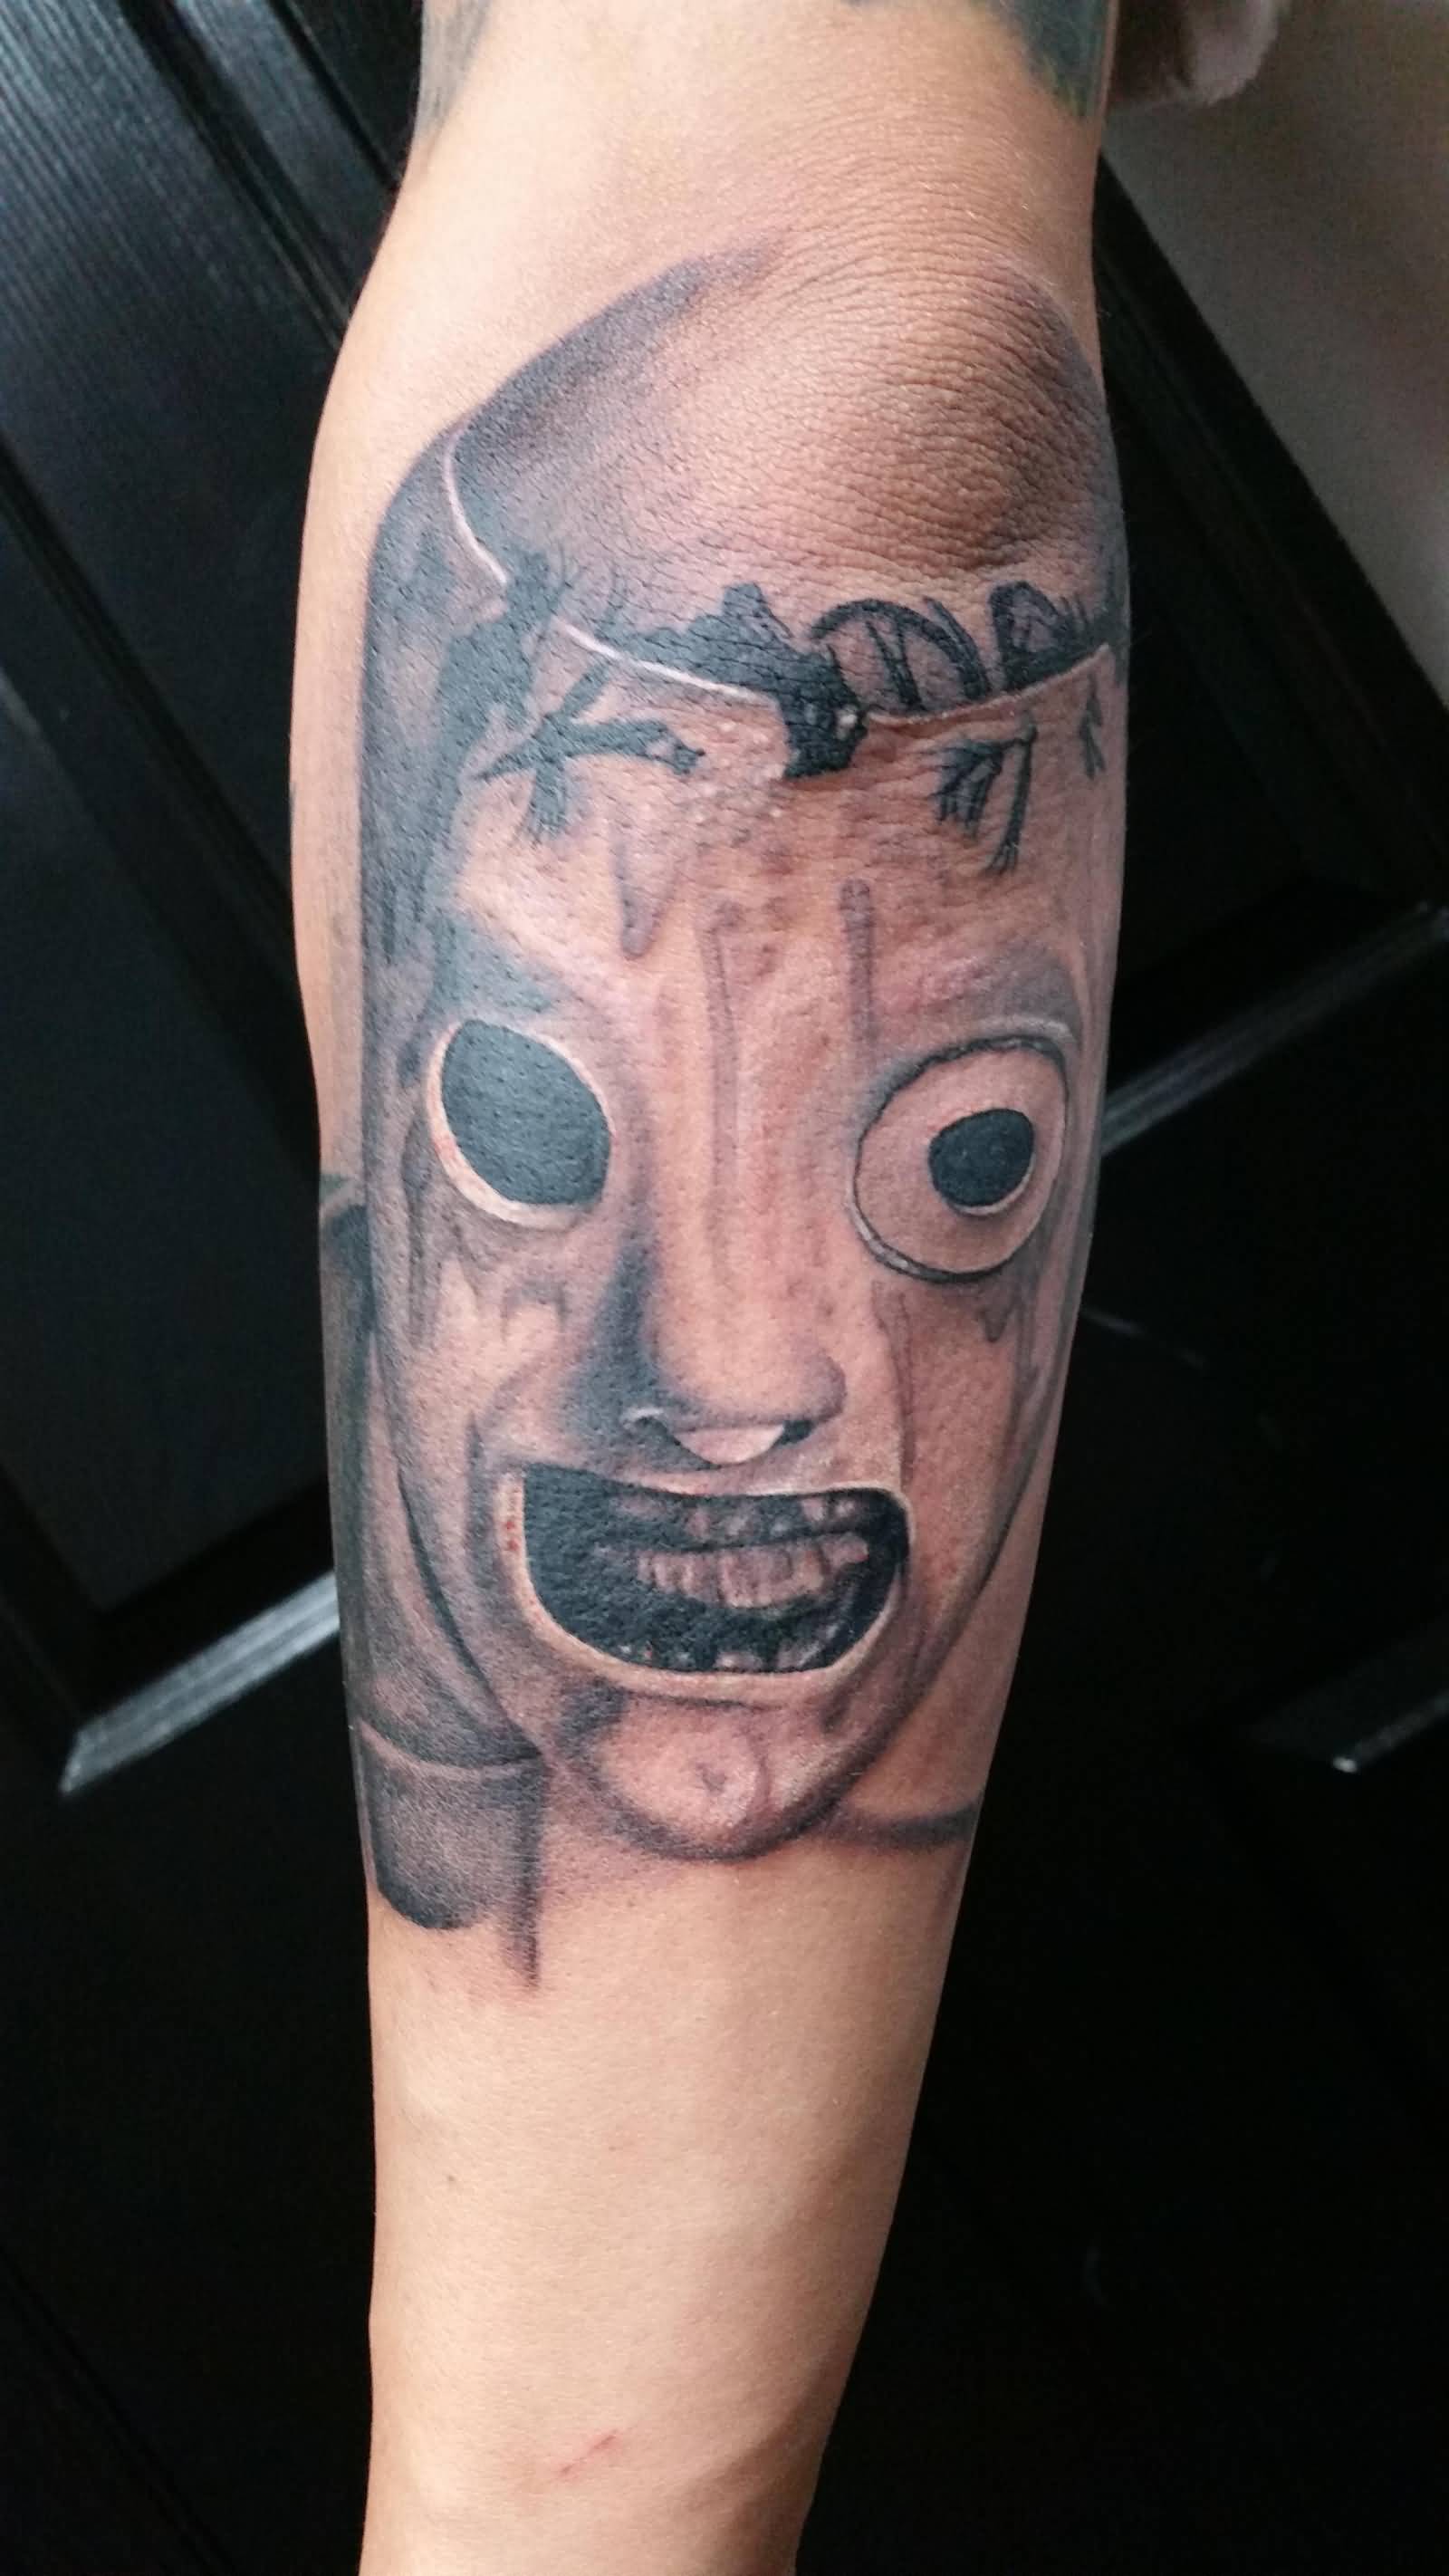 Slipknot Member Mask Tattoo On Arm Sleeve